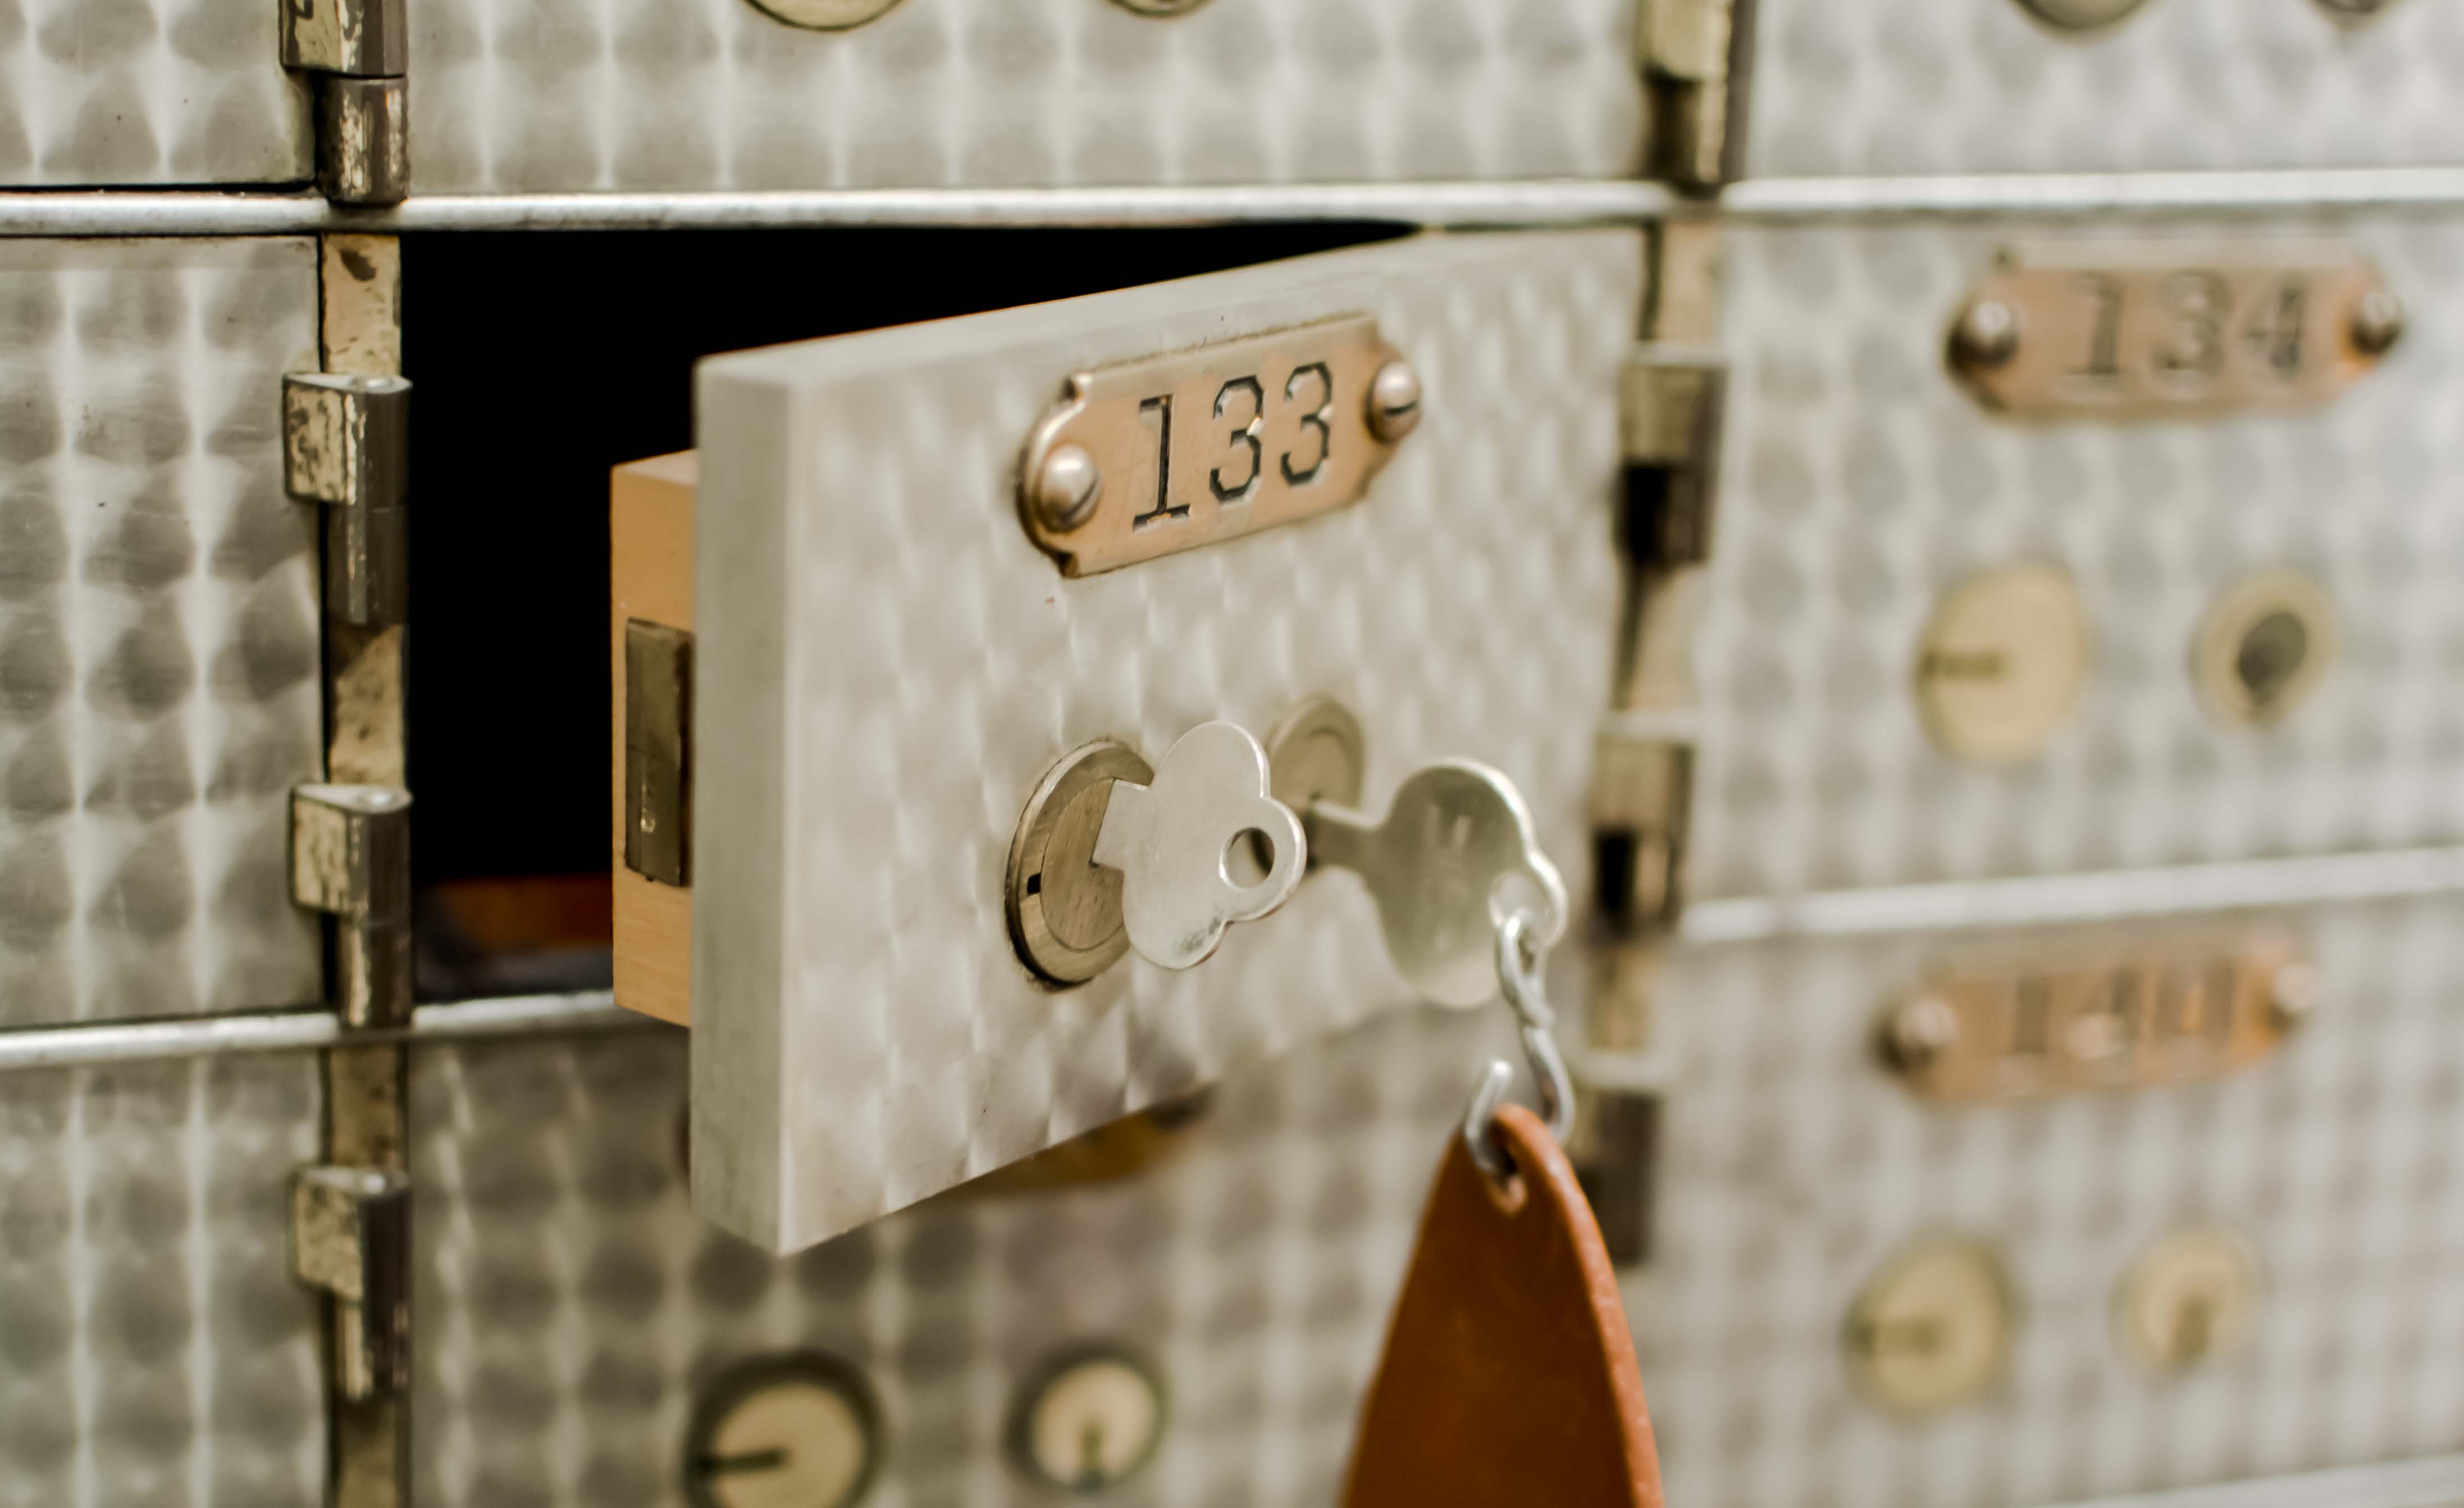 Bank safe deposit box key